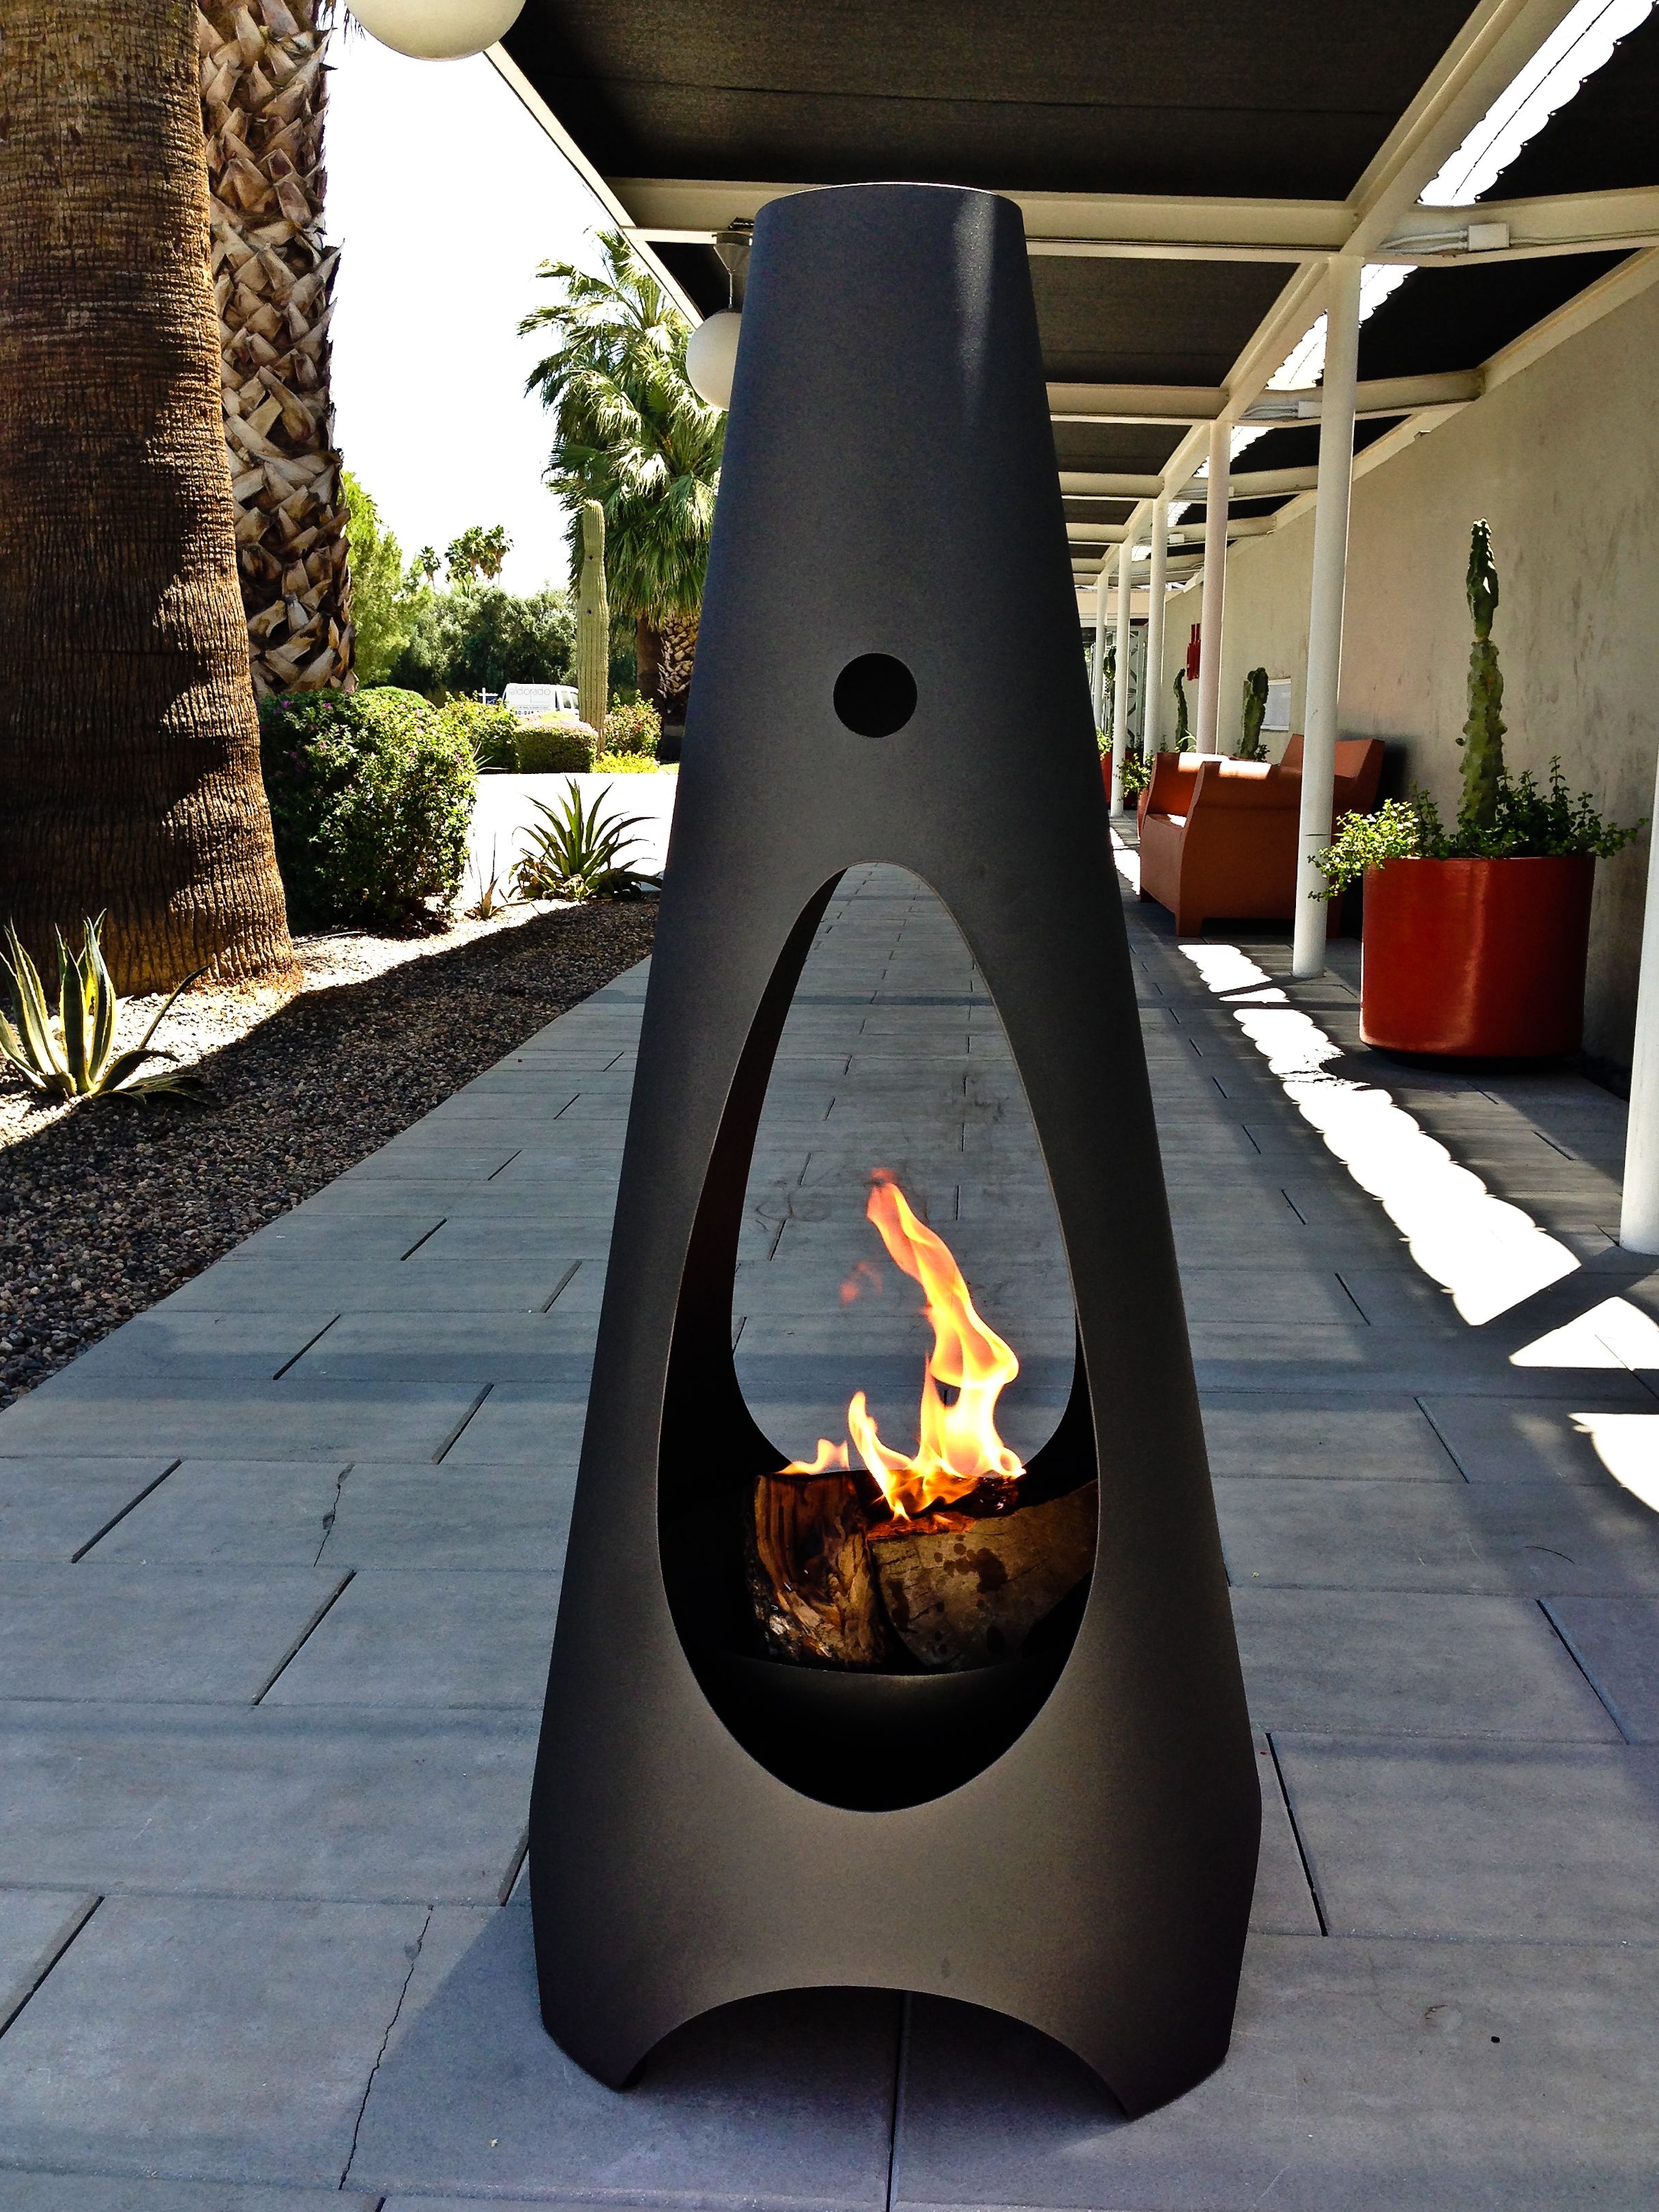 Terracotta Fireplace Inspirational Modfire Phoenix Arizona Modfire Uk Project